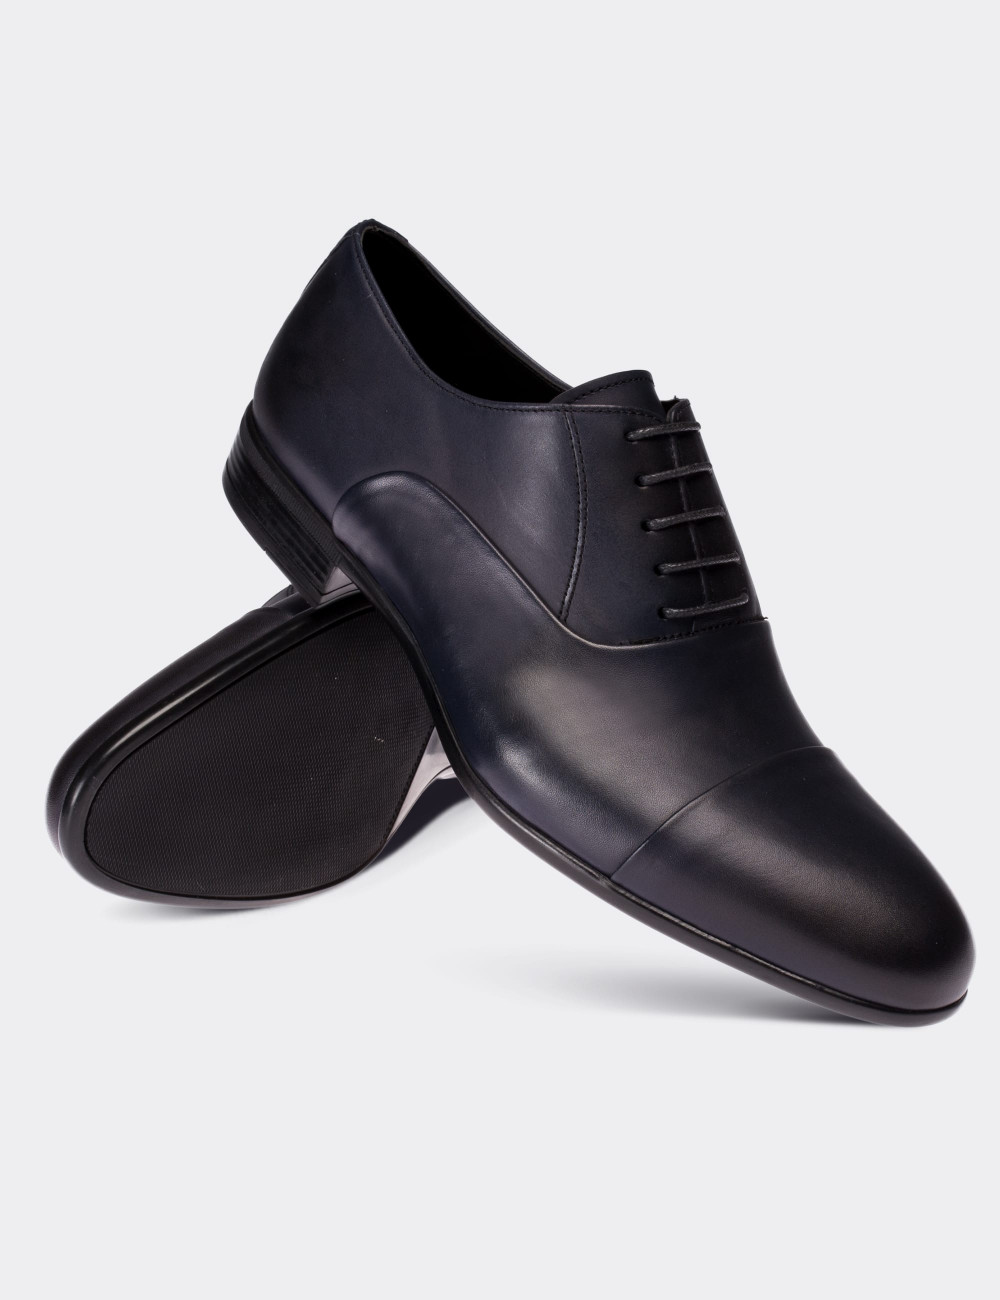 Hakiki Deri Lacivert Klasik Erkek Ayakkabı - 01590MLCVC01